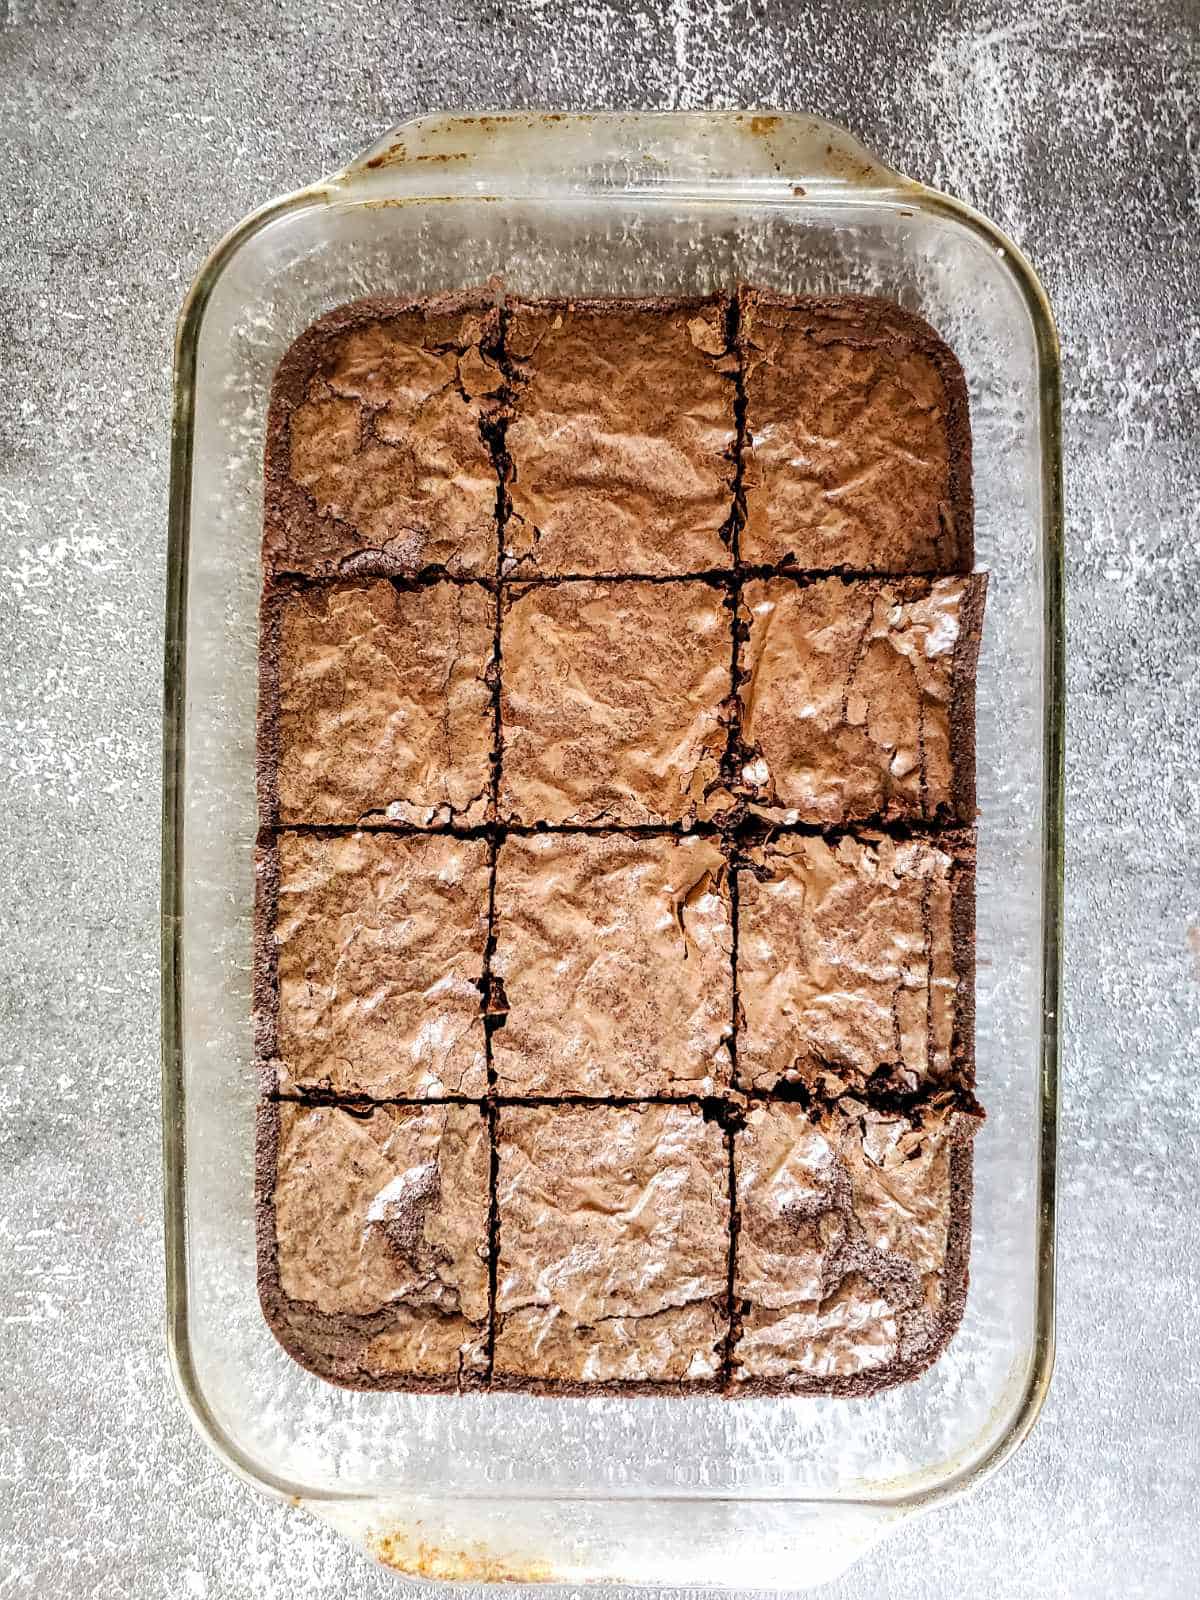 pan of baked brownies, cut.